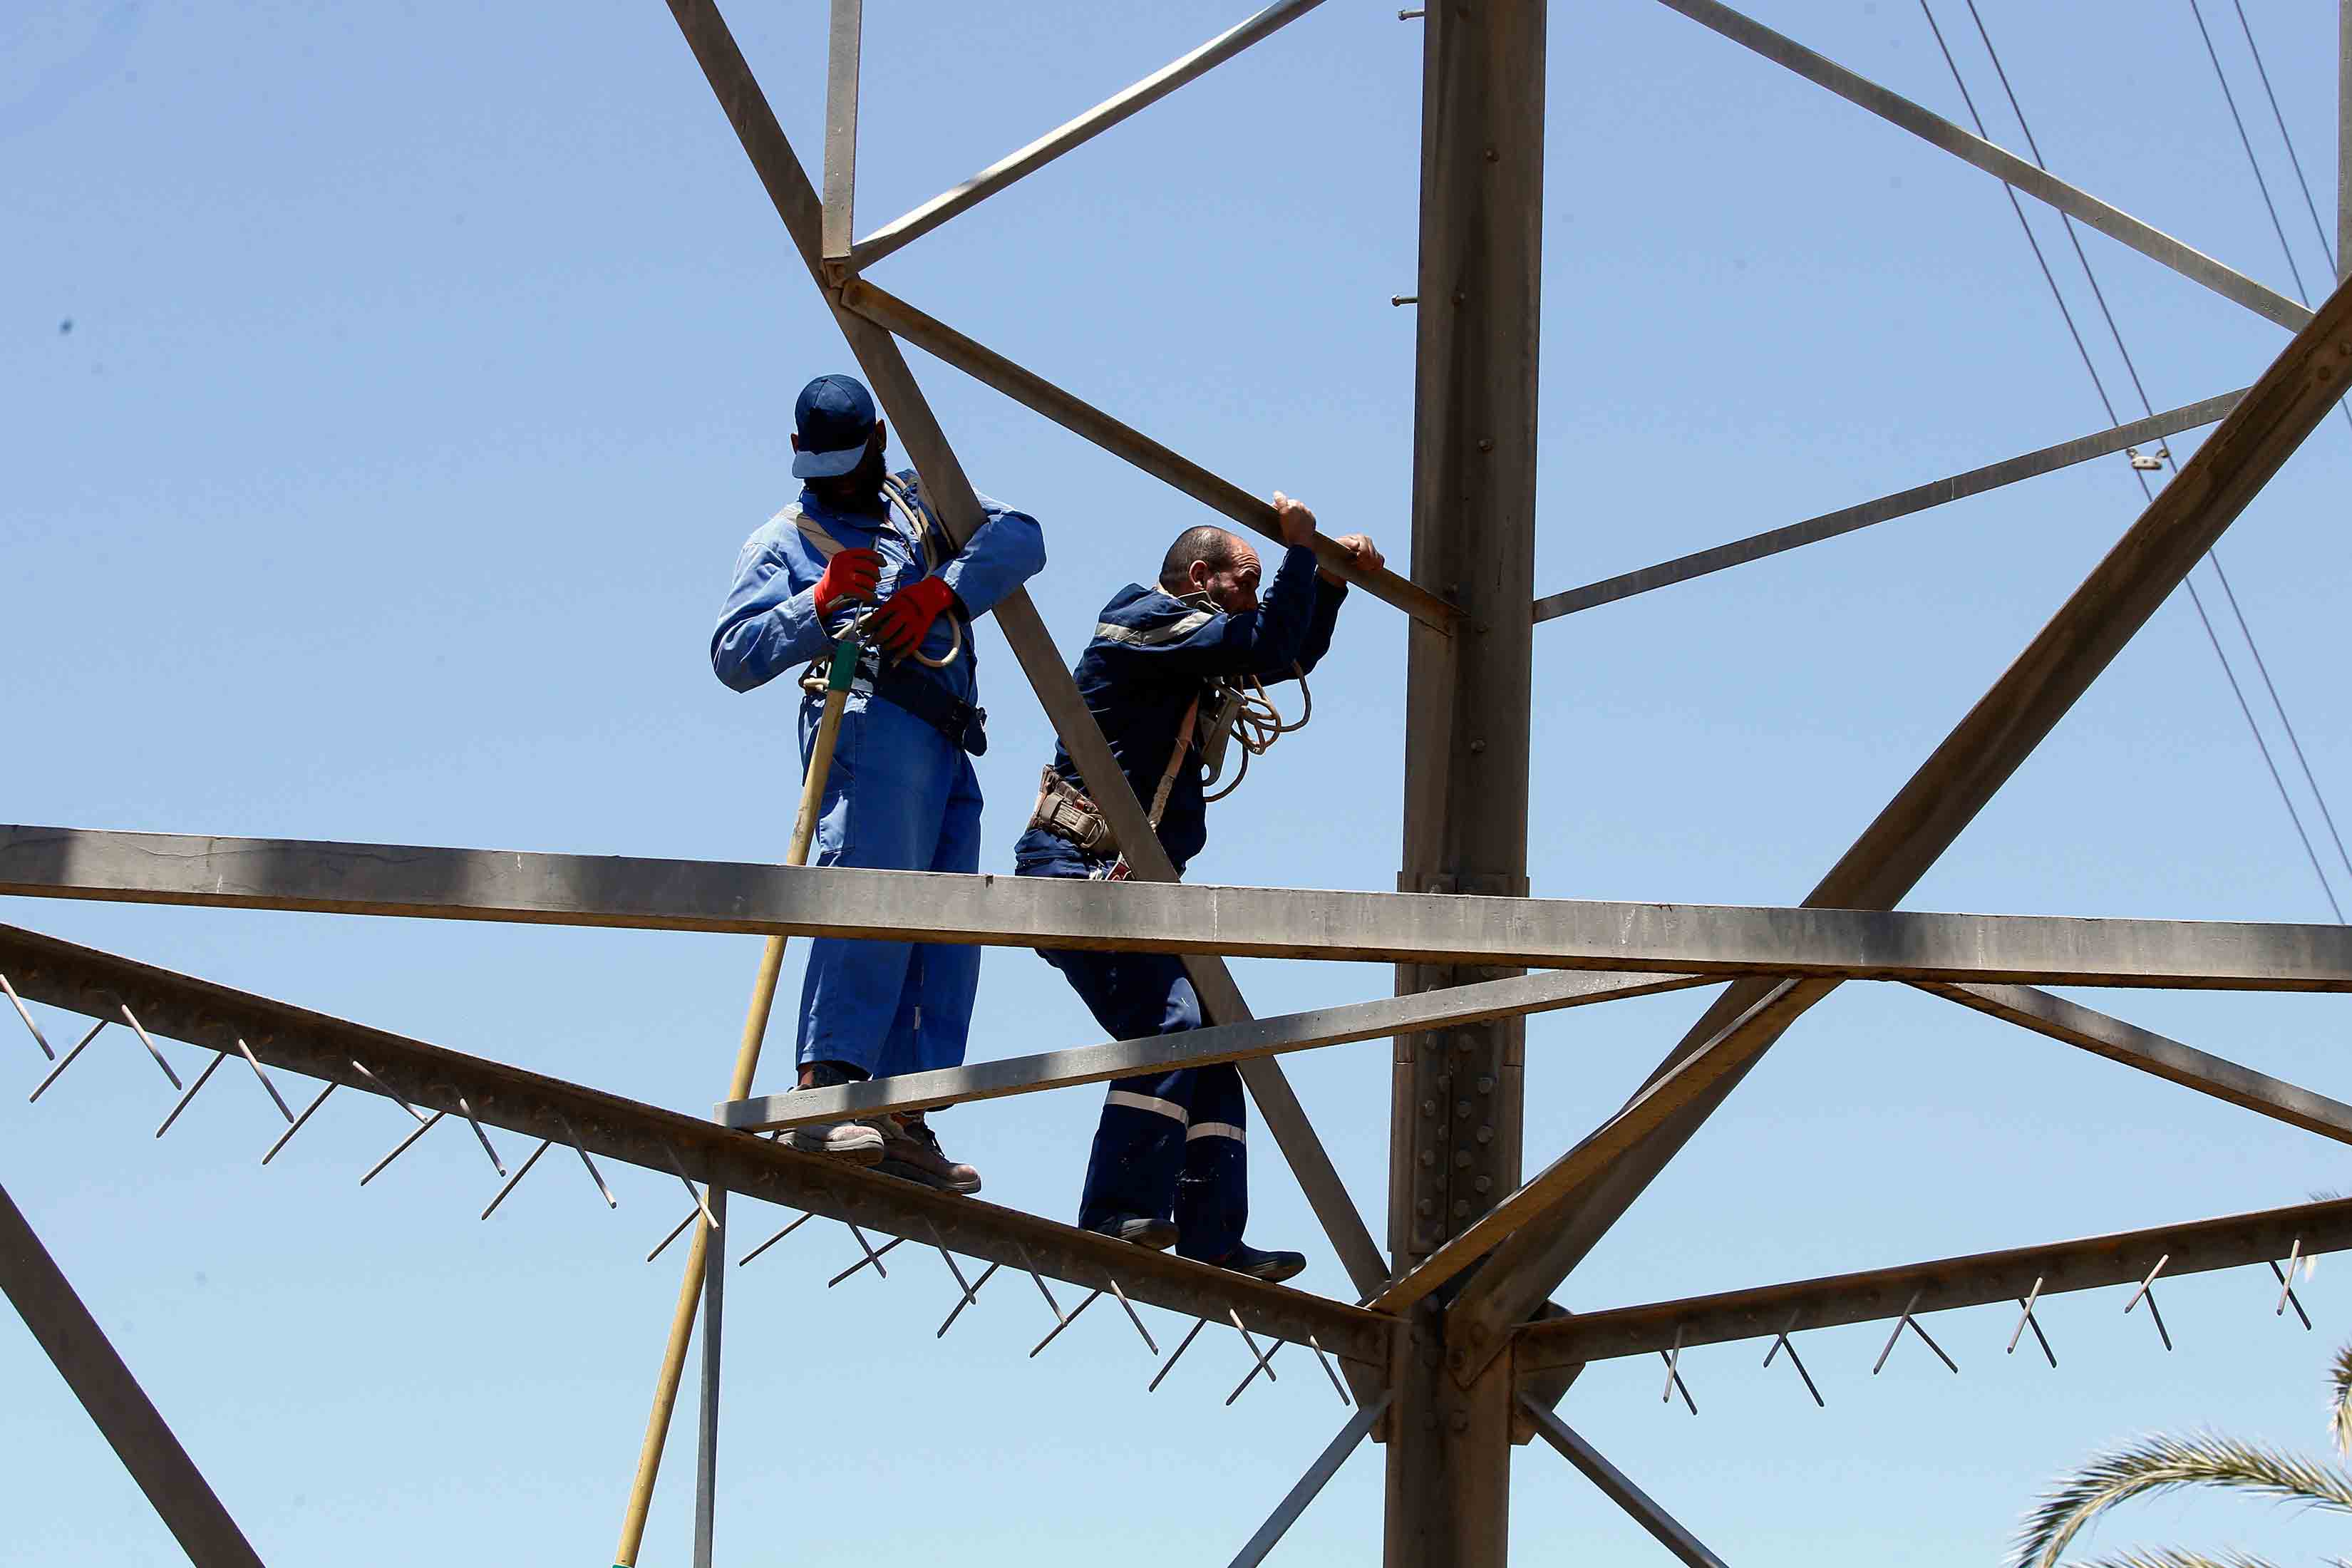 مهمة إصلاح خطوط الكهرباء جنوب طرابلس صعبة وخطيرة في ظل المعارك 